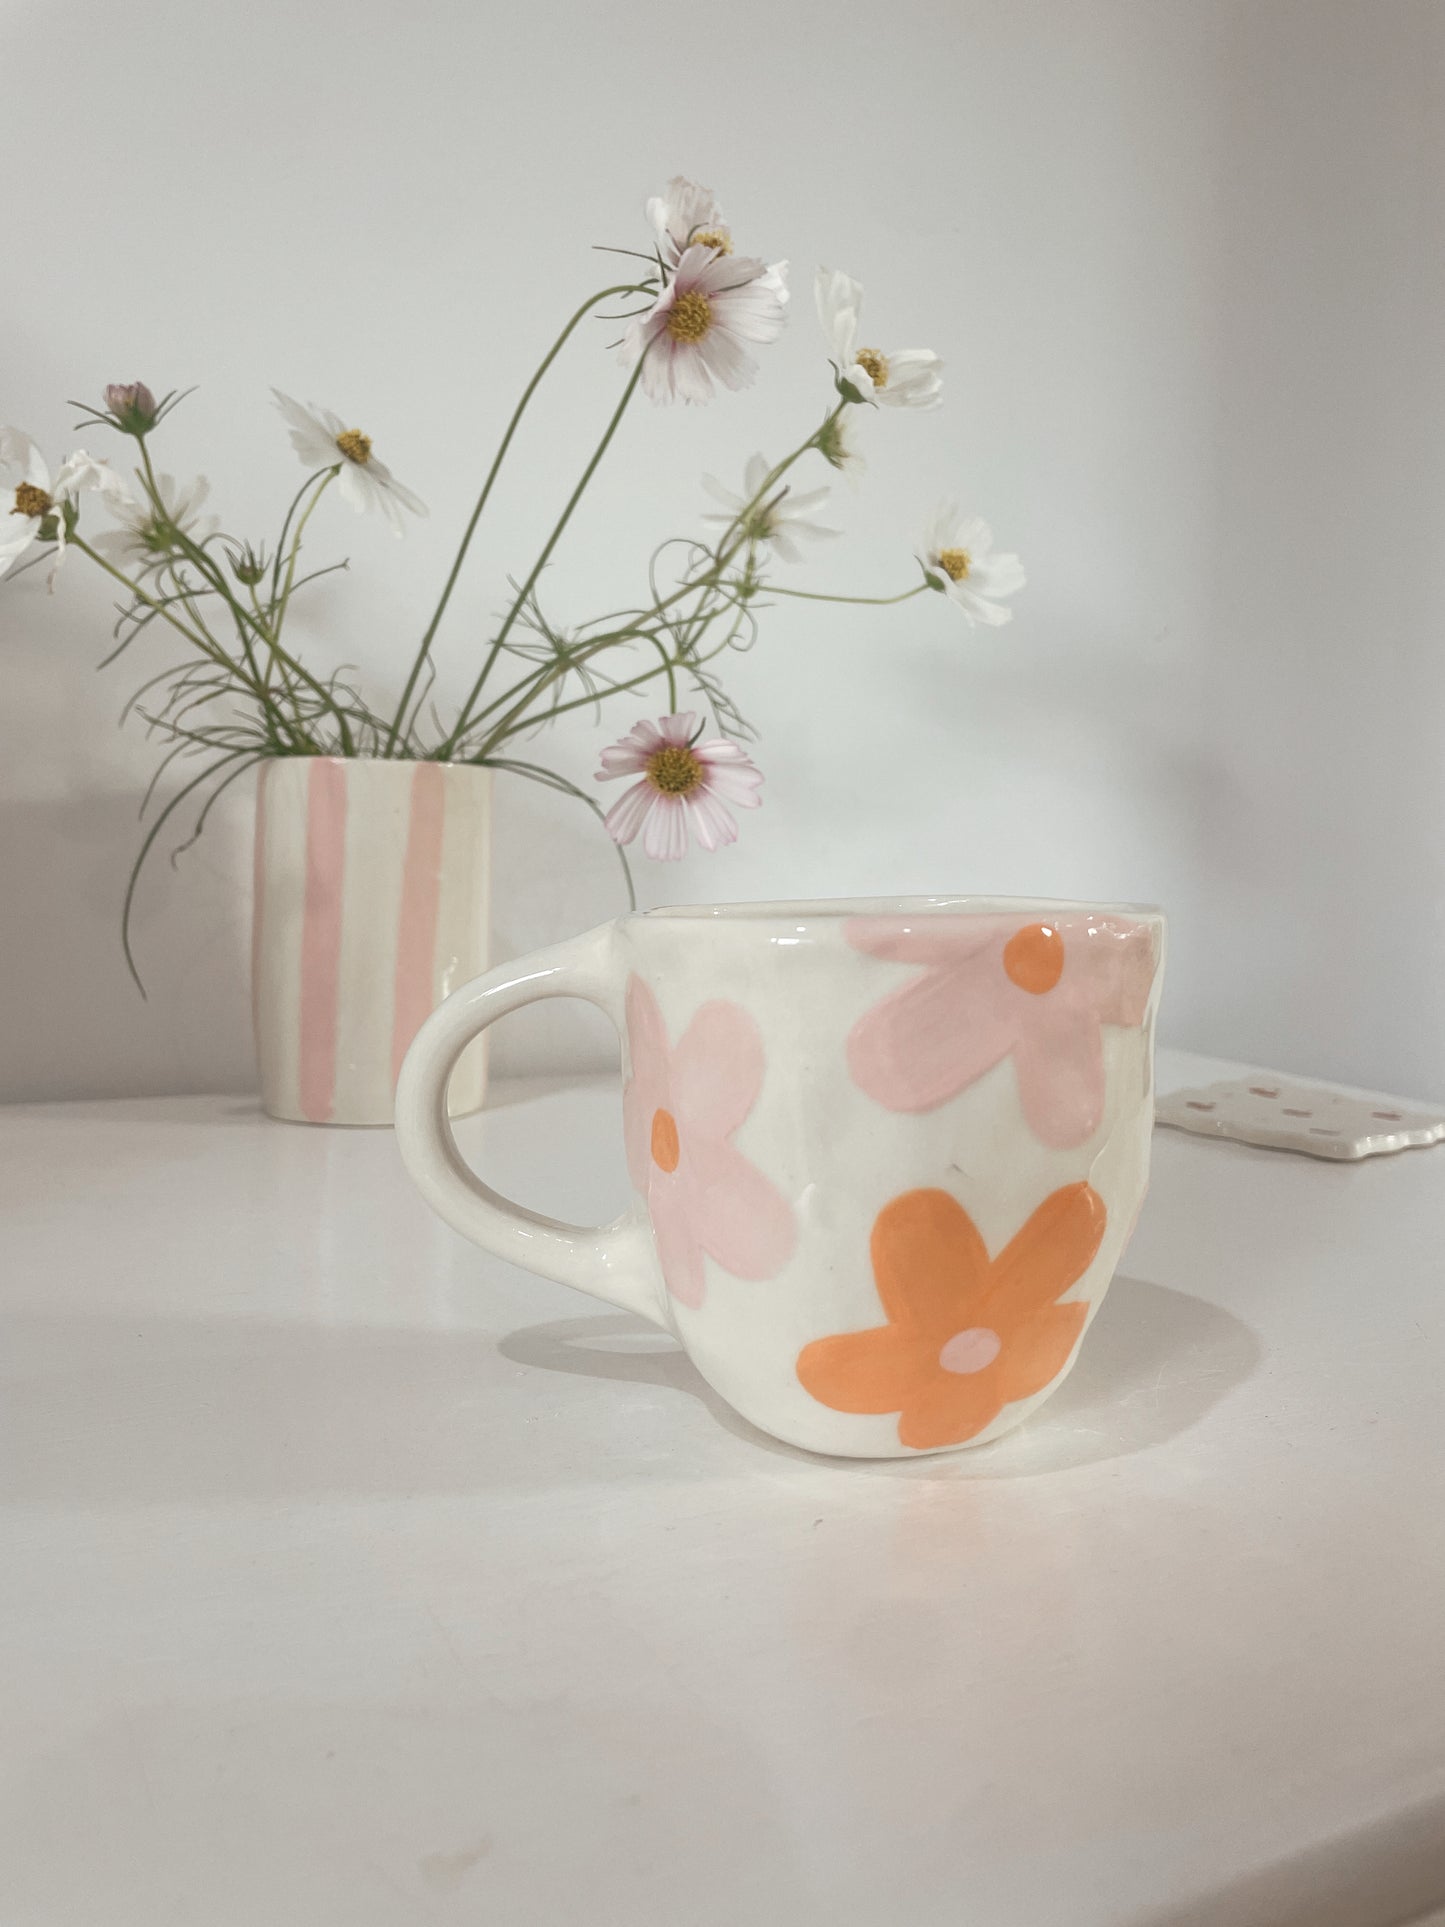 Pink and orange daisy mug